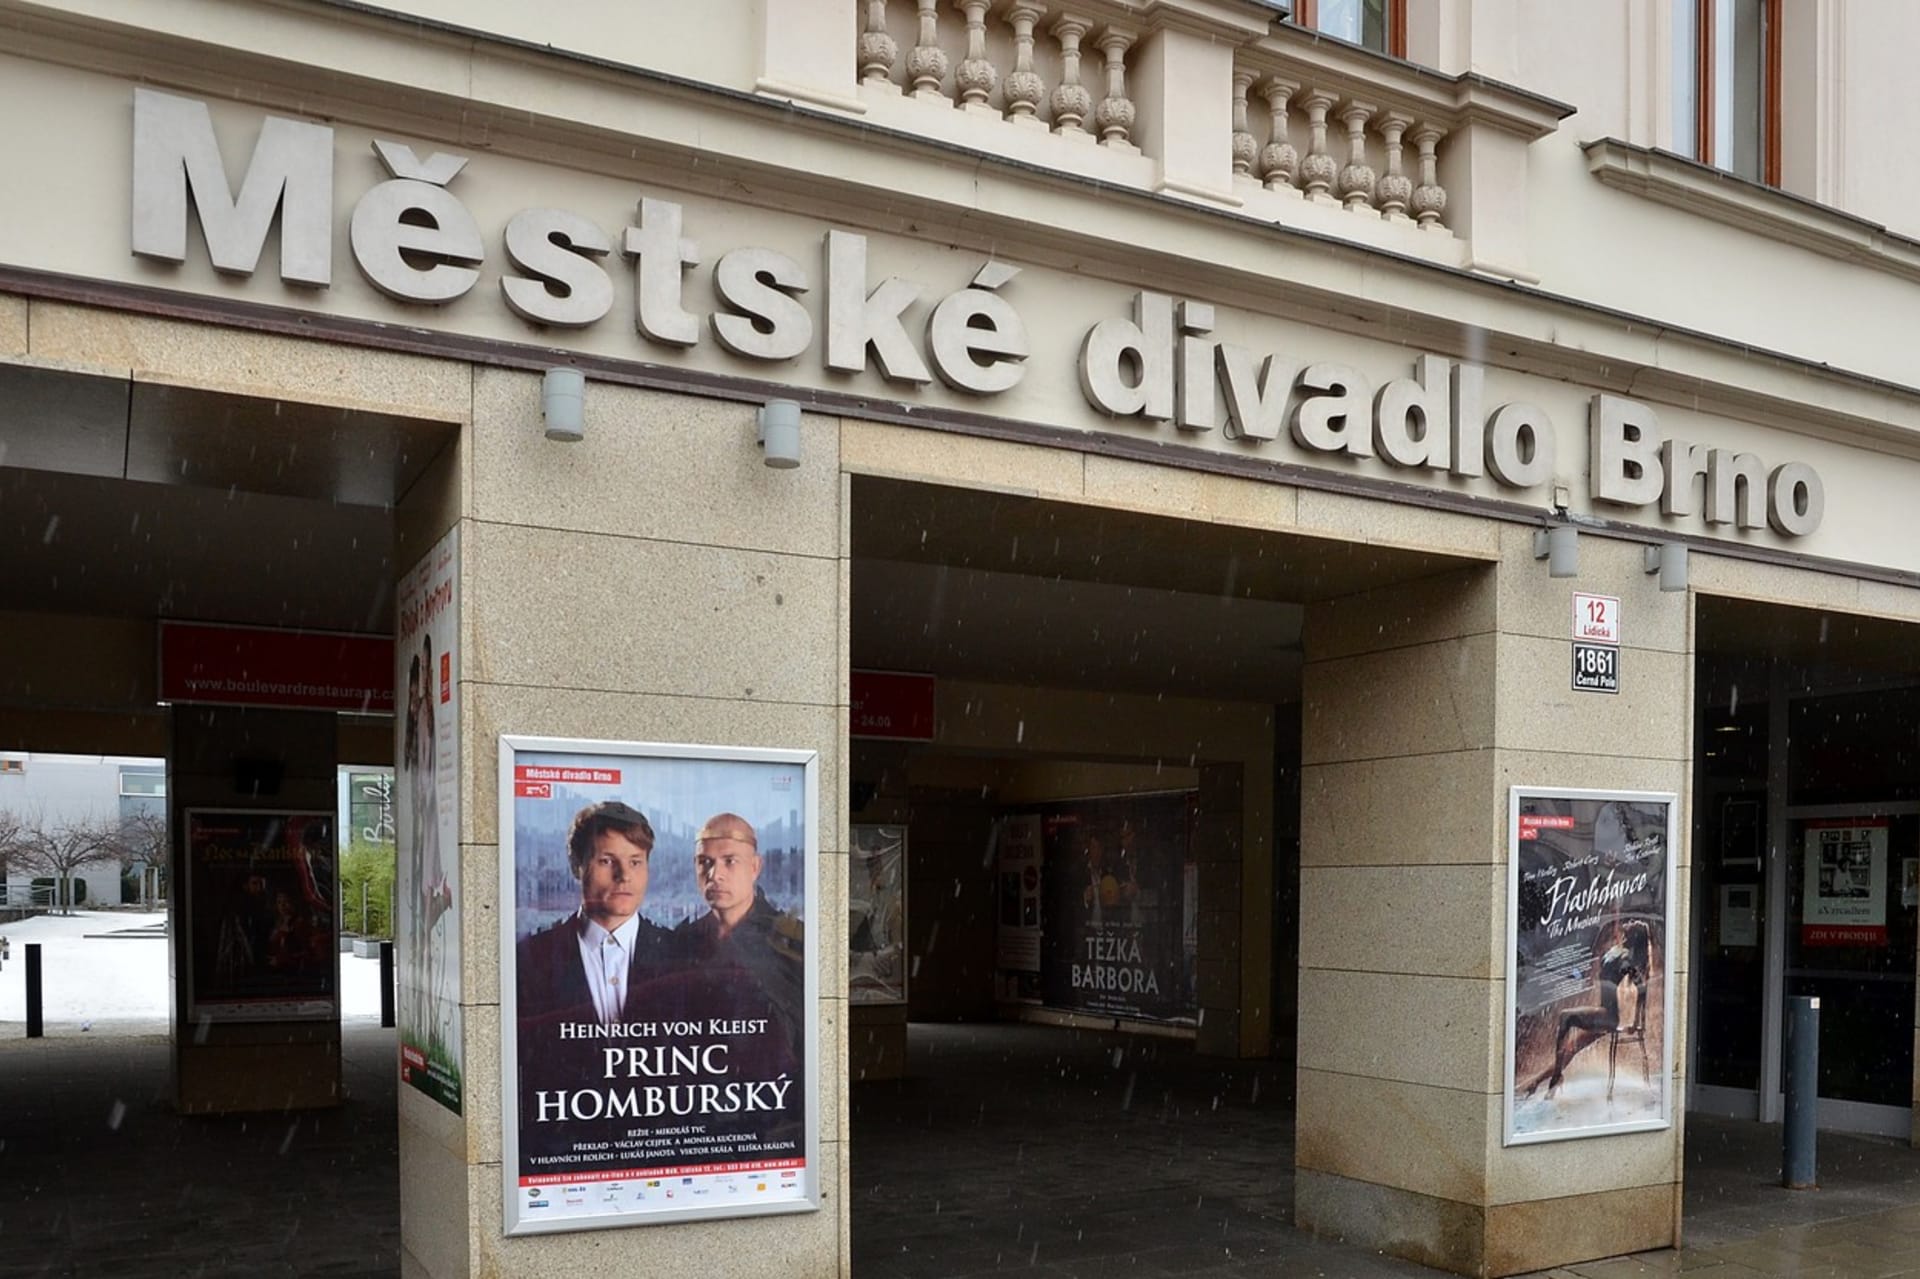 Městské divadlo Brno 